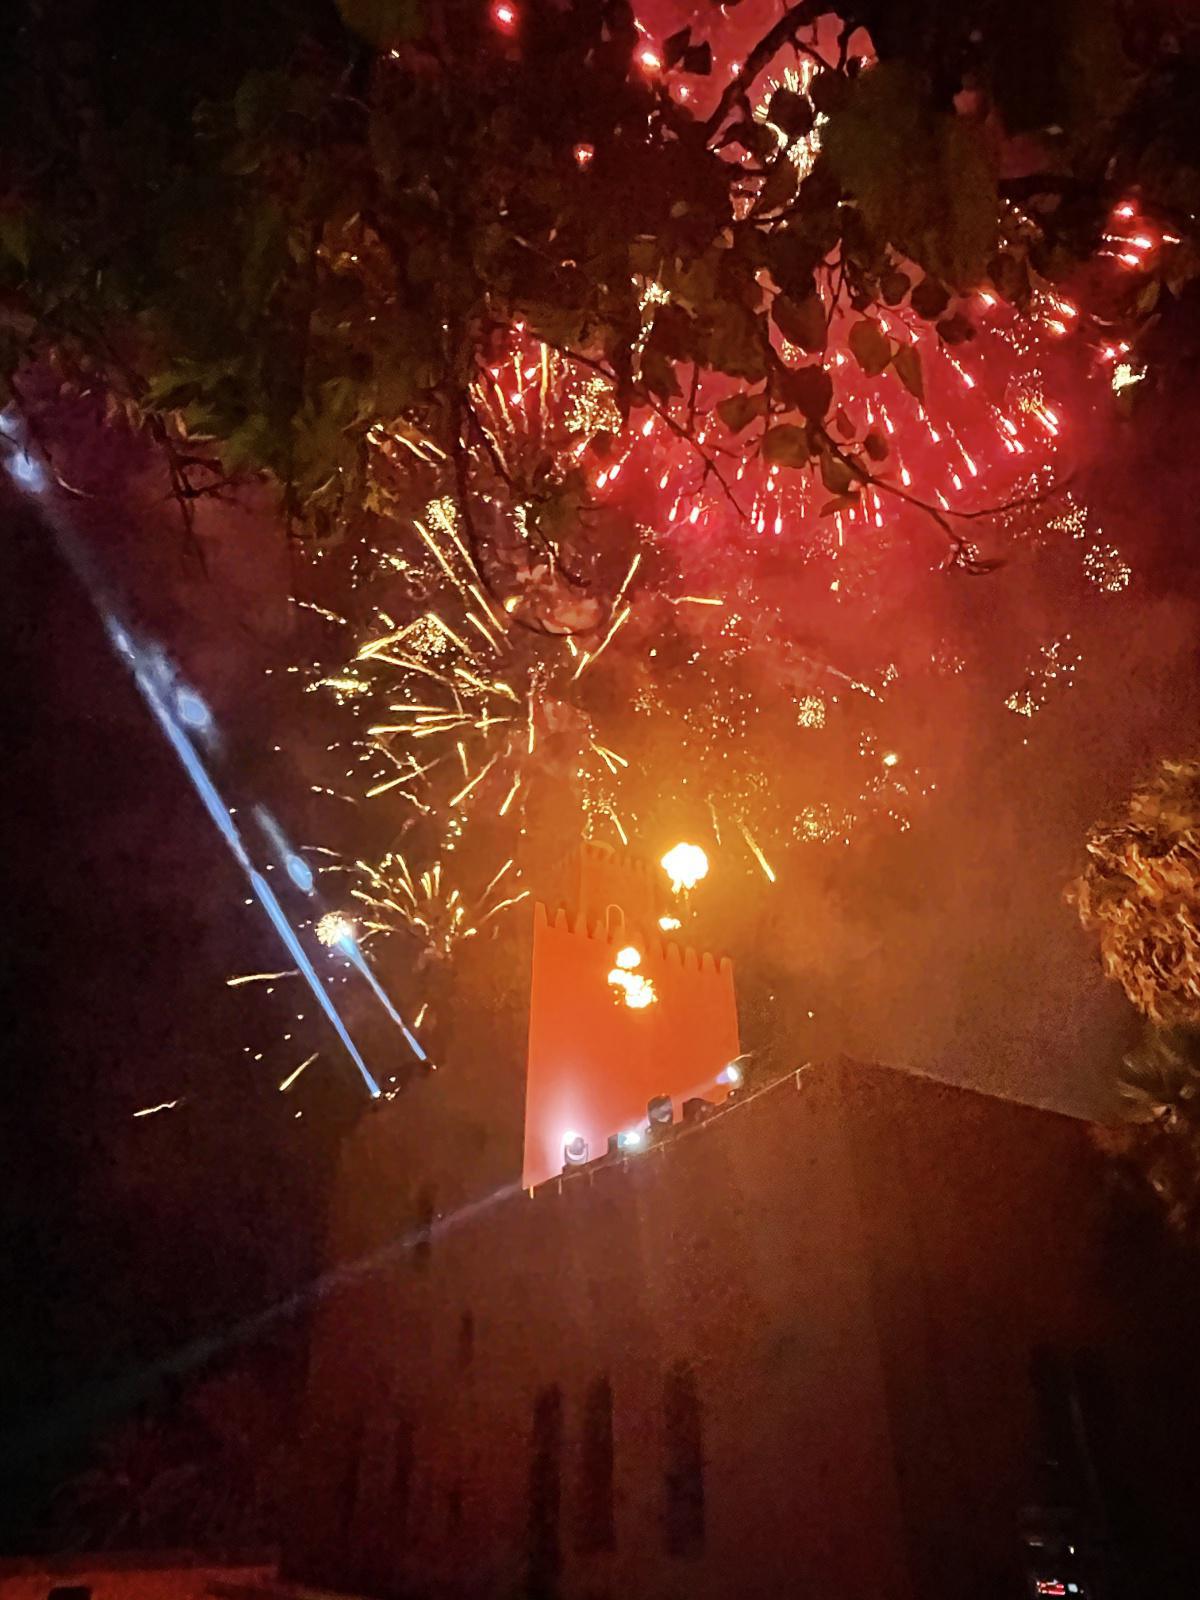 Les feux de la Saint-Jean en Andalousie. Une célébration enflammée et pleine de magie! 